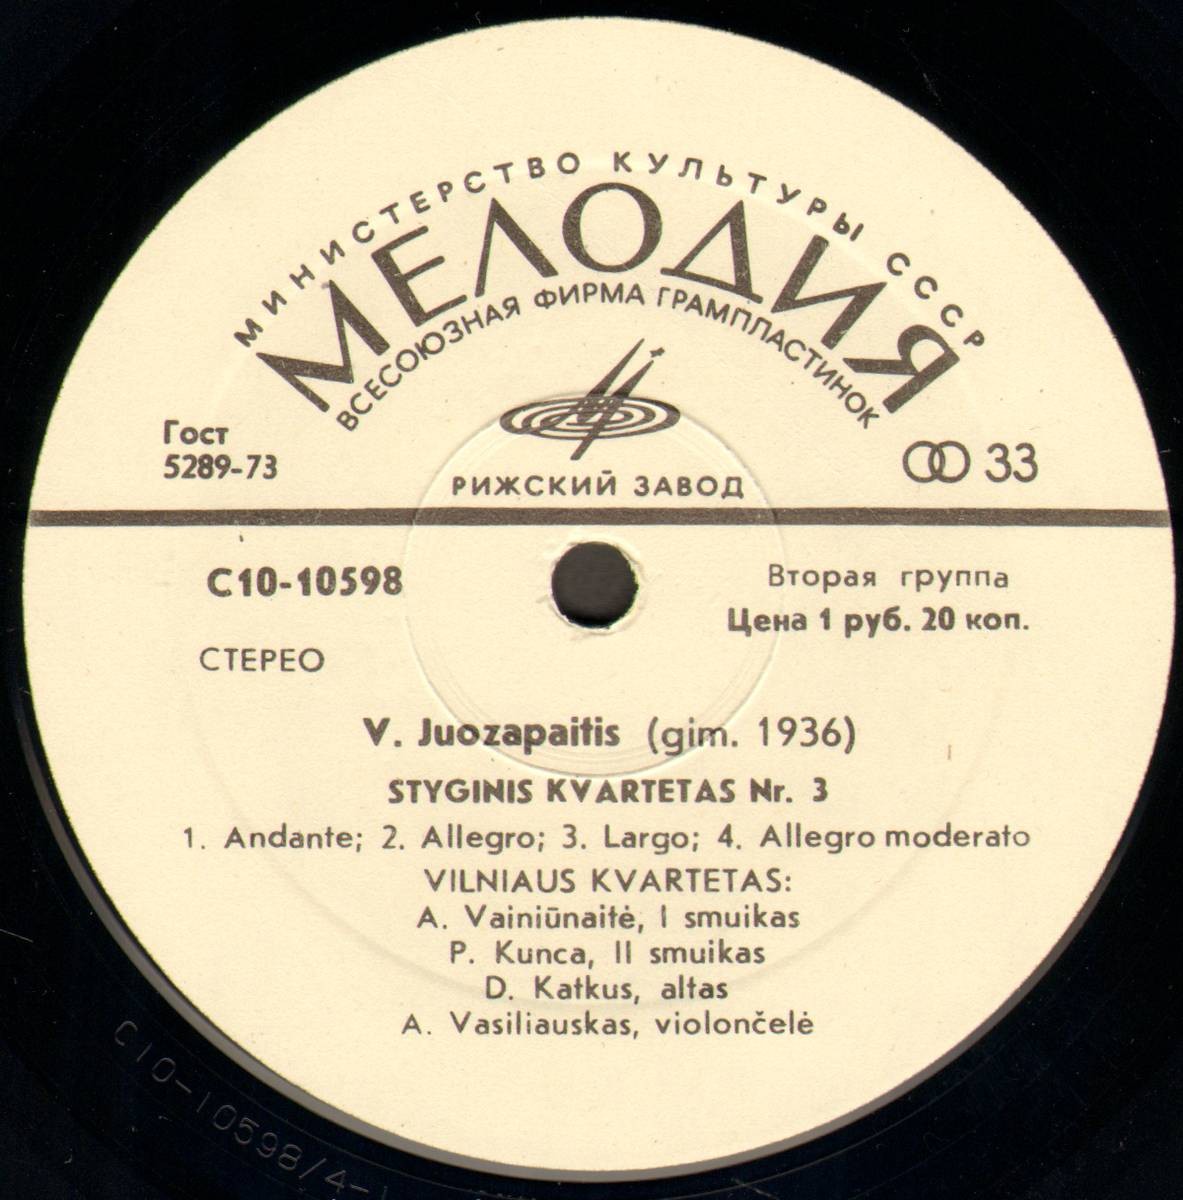 Витаутас ЮОЗАПАЙТИС (1936). Квартеты № 2 и № 3 для двух скрипок, альта и виолончели